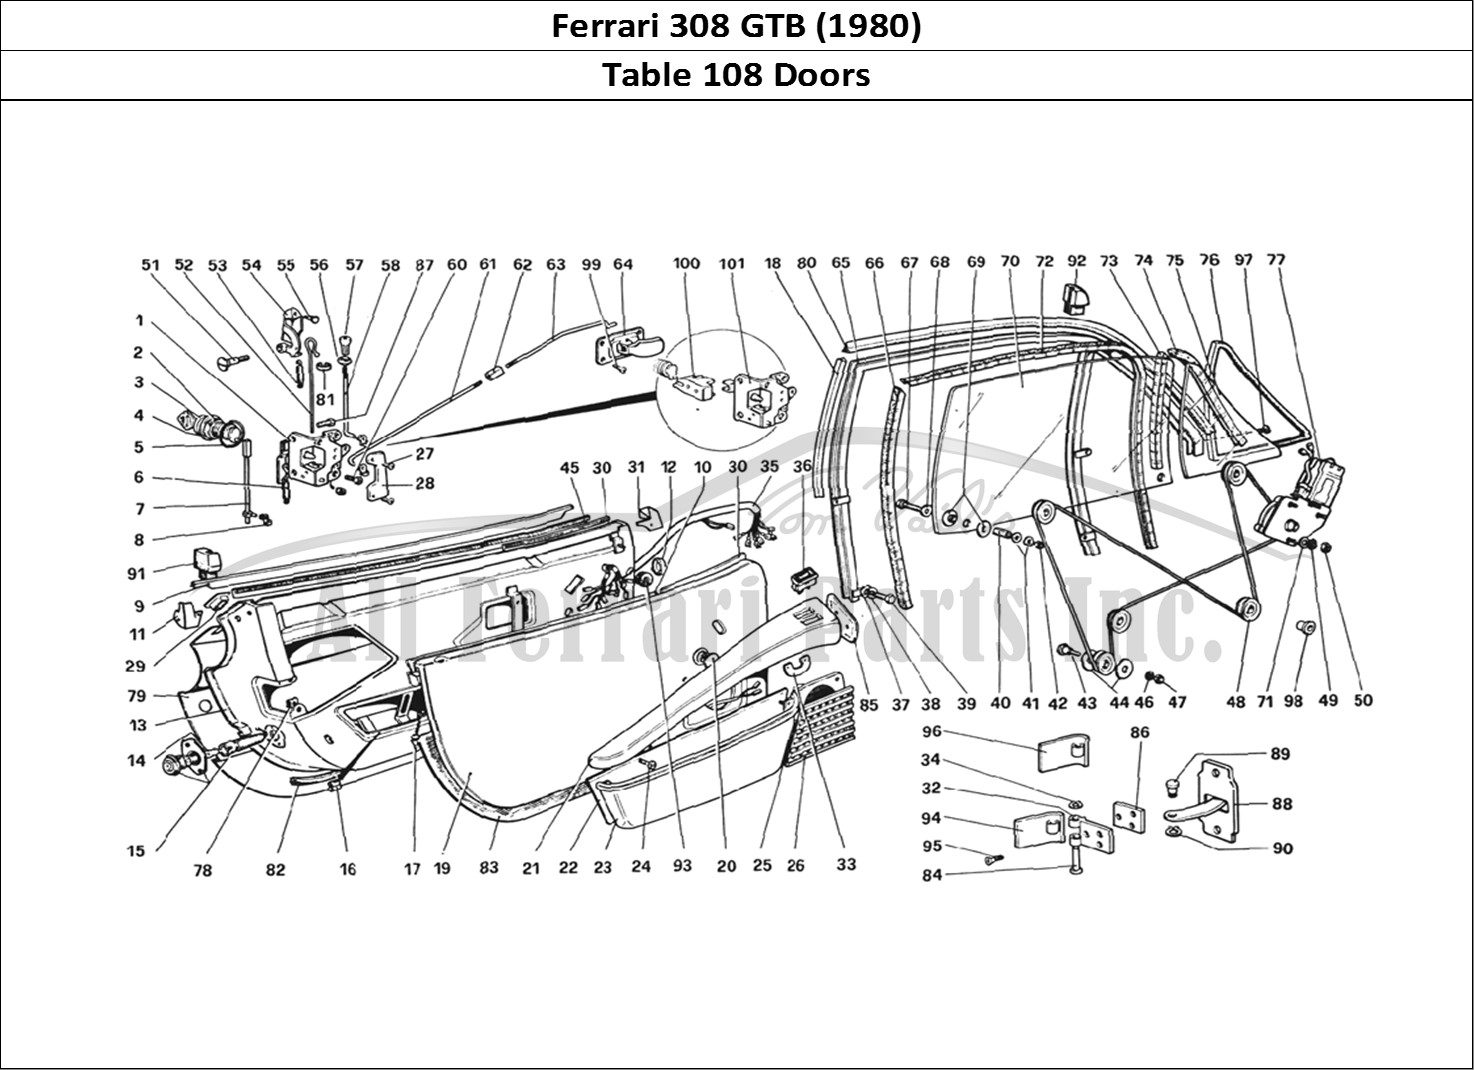 Ferrari Parts Ferrari 308 GTB (1980) Page 108 Doors